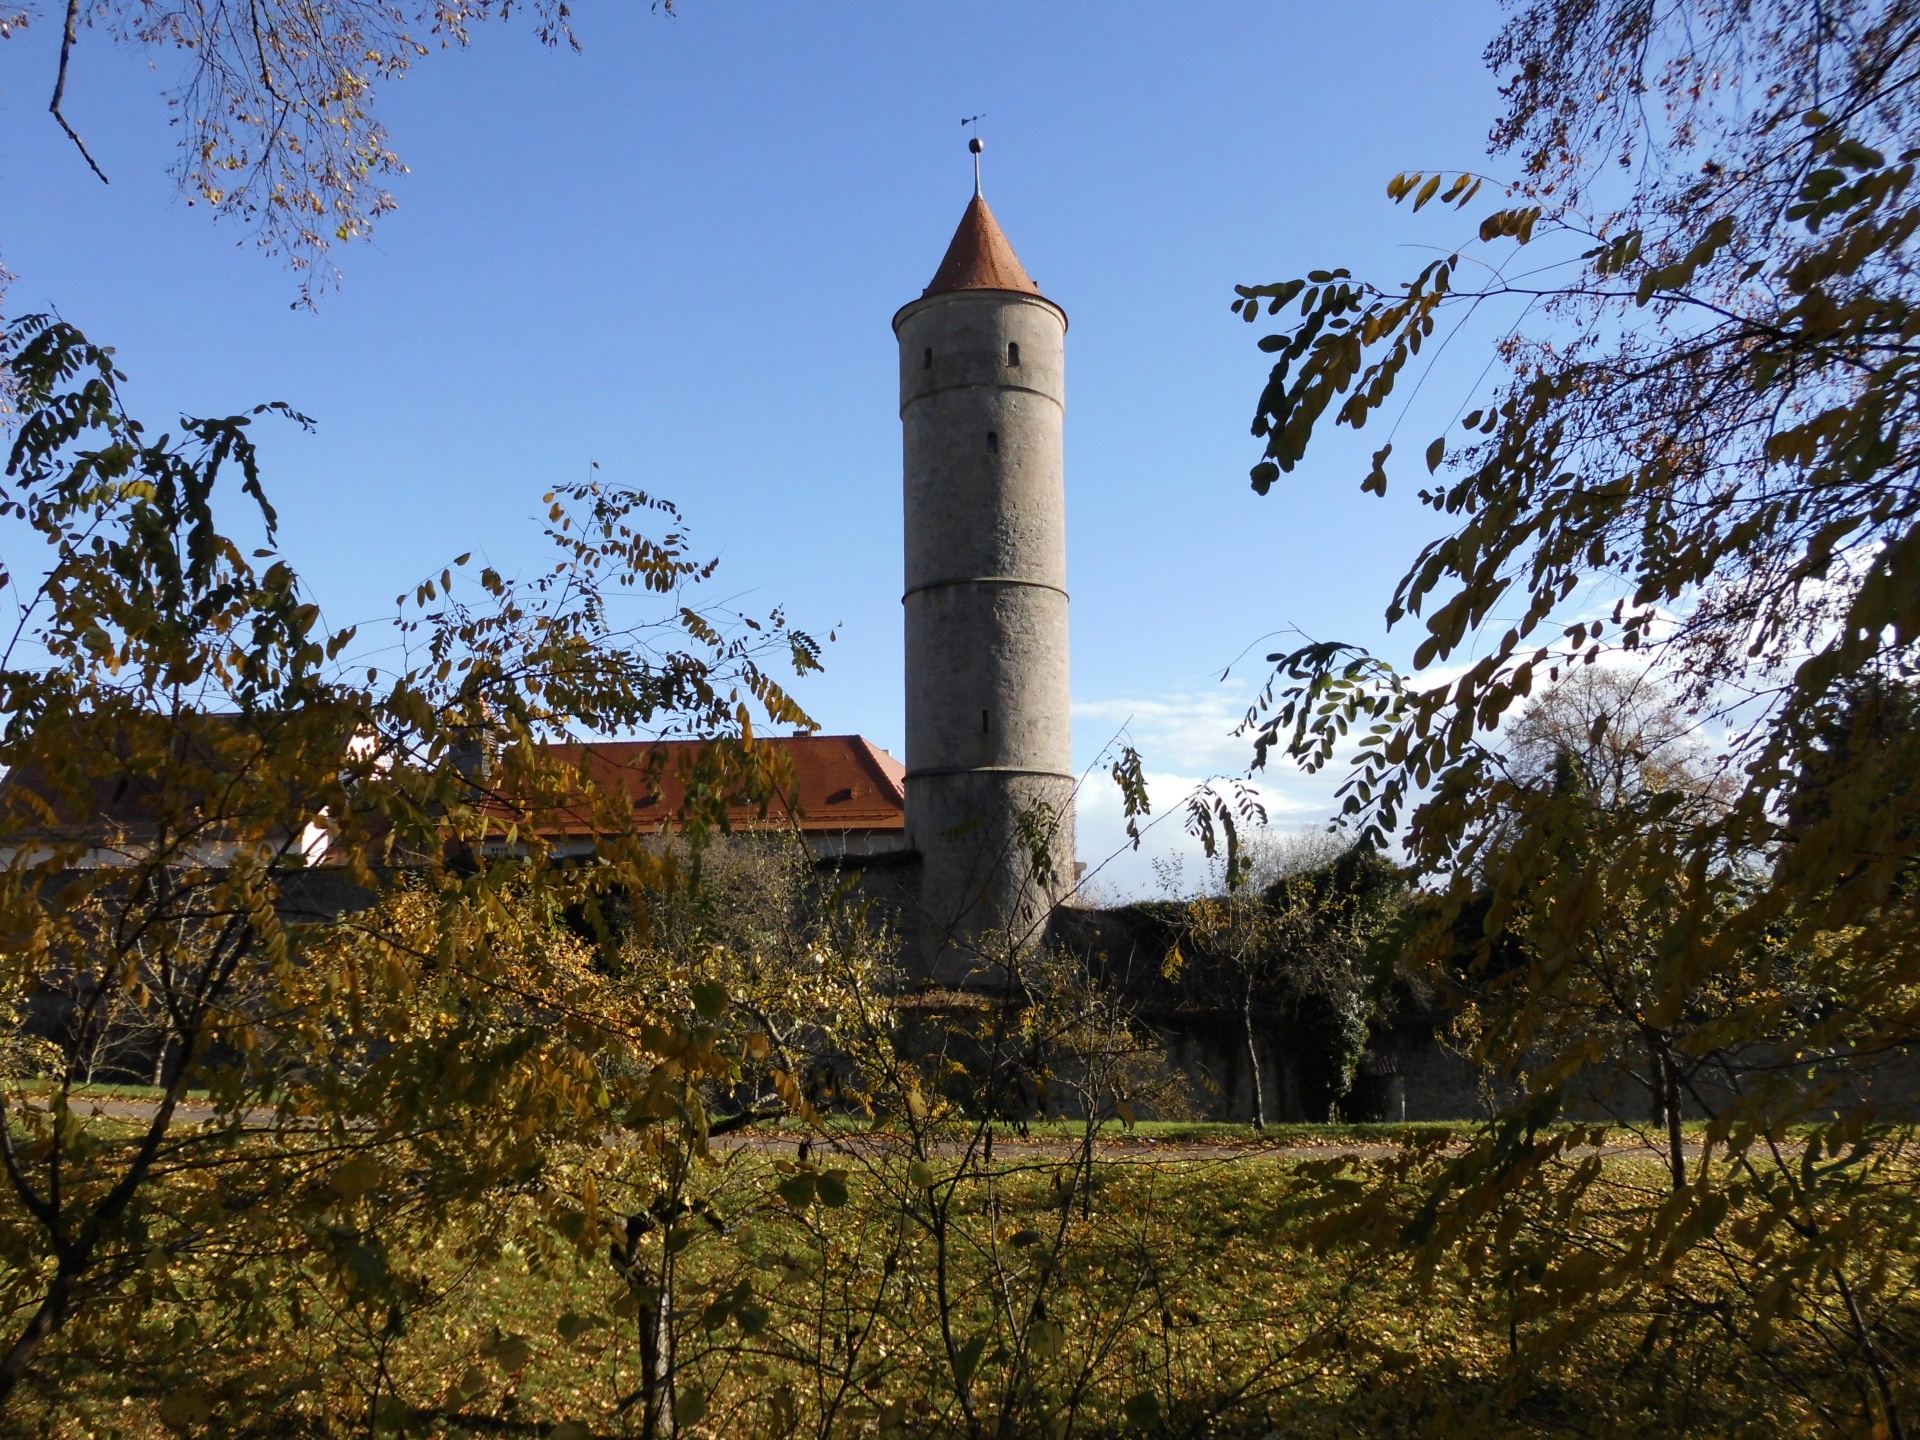 Middeleeuwse toren